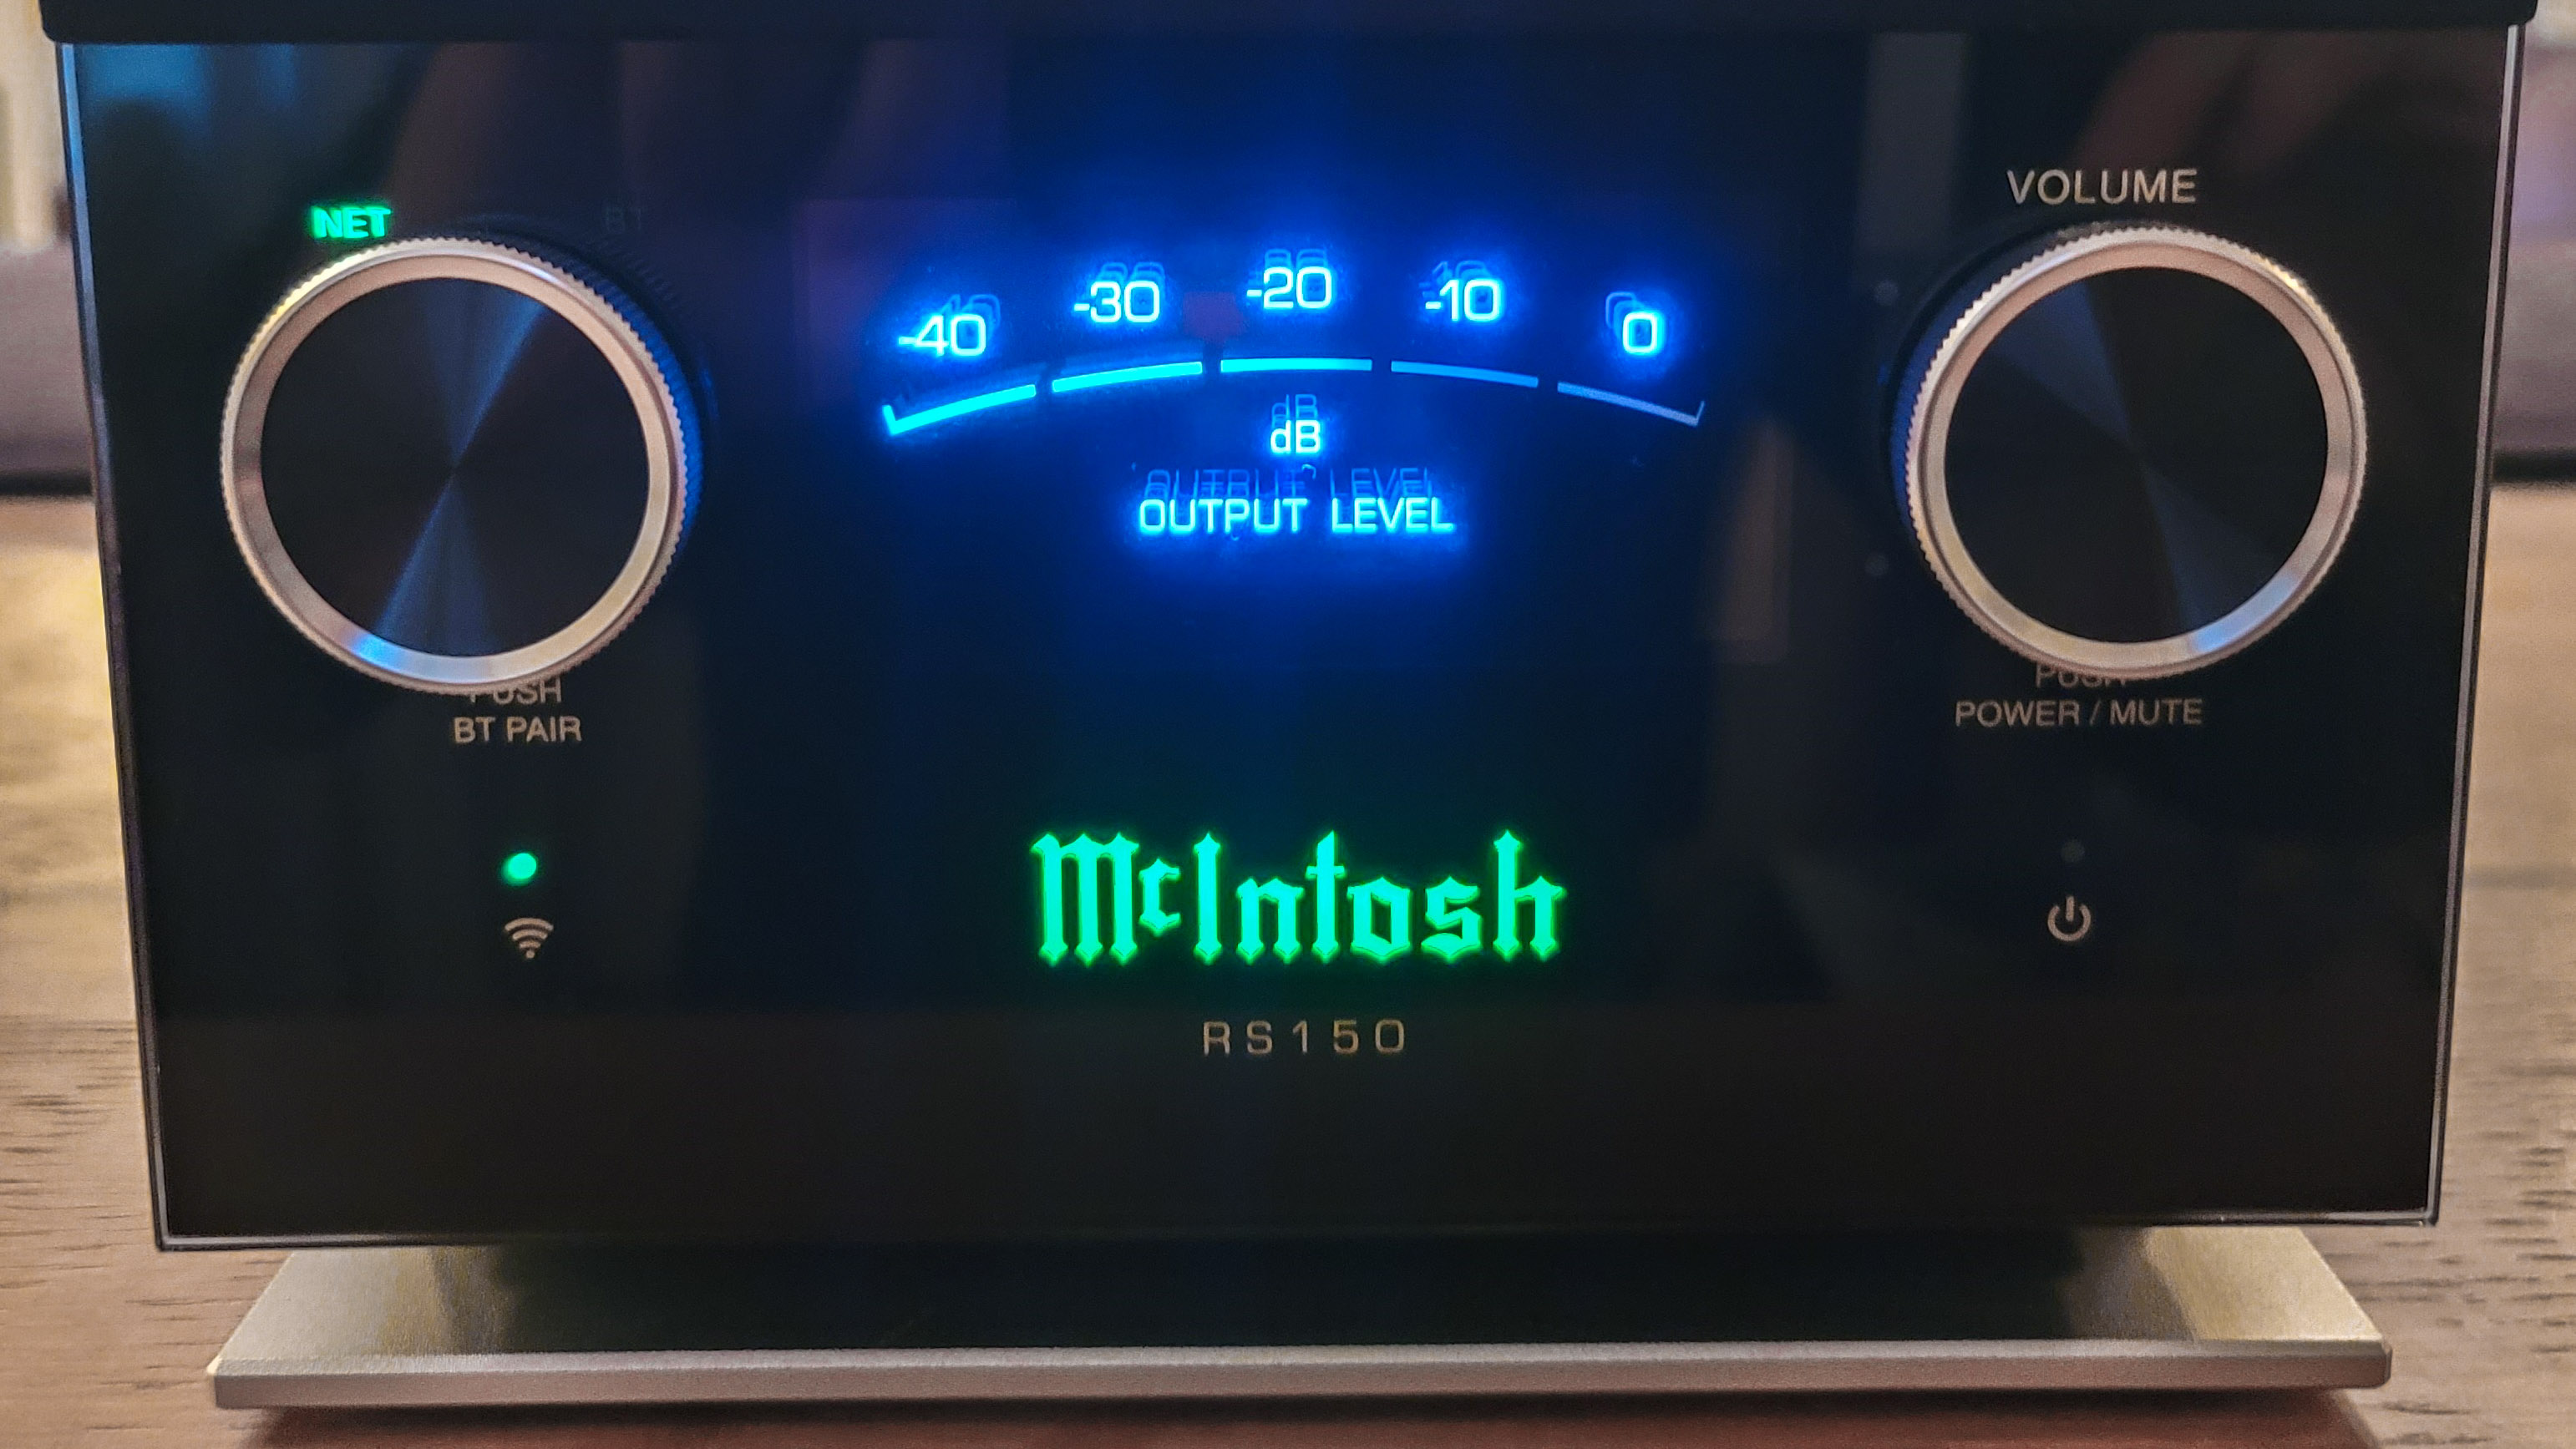 McIntosh RS150, VU ölçer ekranının yakından görünümünü gösteriyor